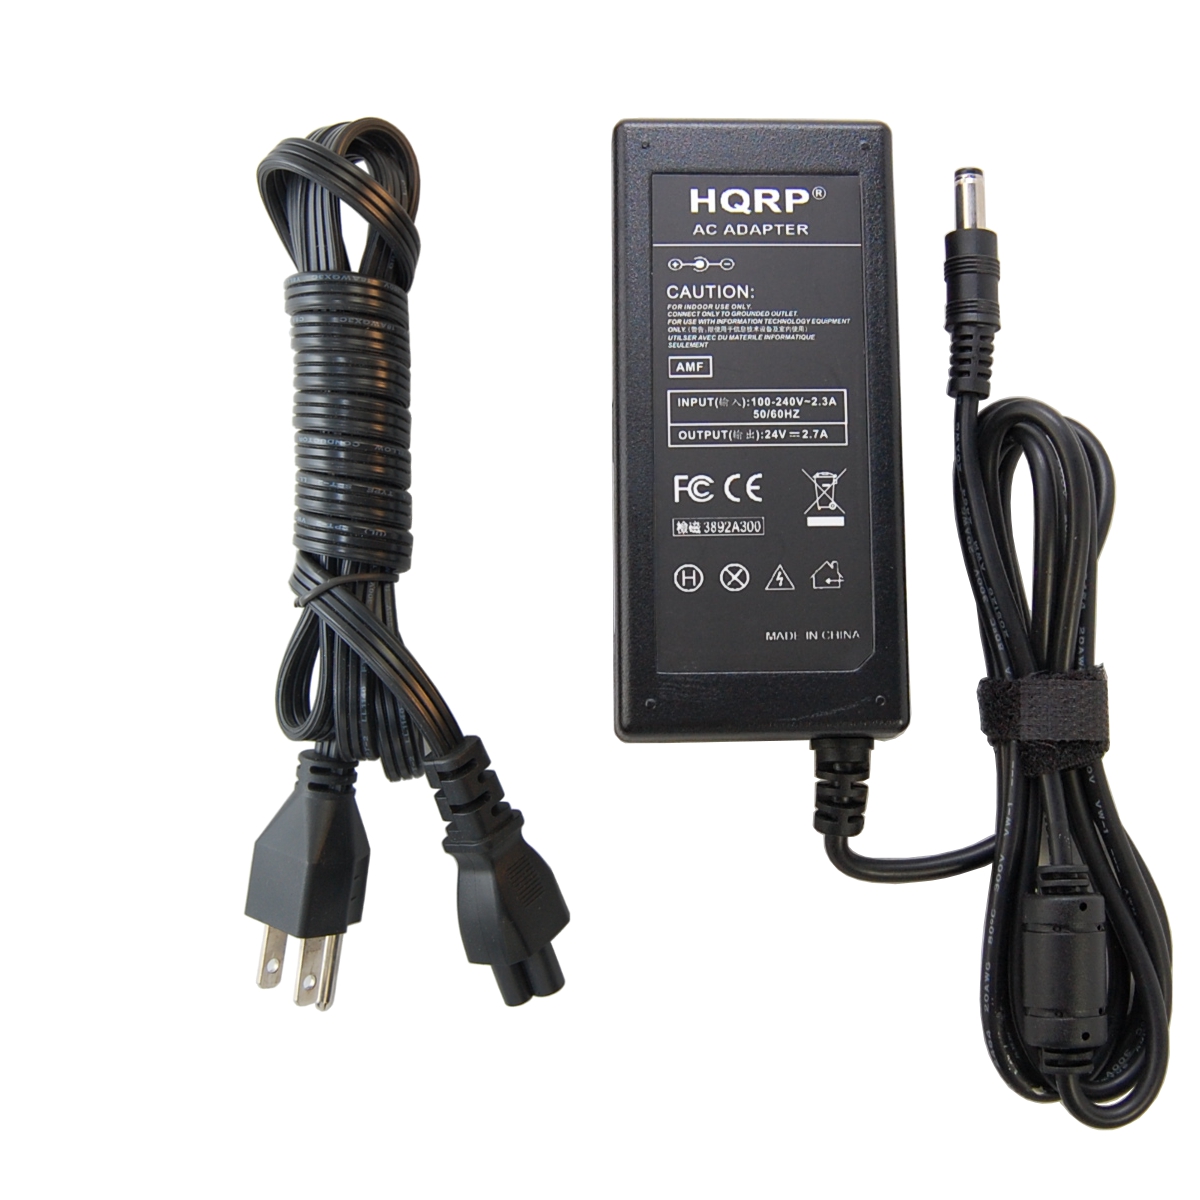 HQRP 24V AC Adapter for Harman Kardon SB16 Soundbar Speaker System Power Supply PSU Cord Adaptor F10652A